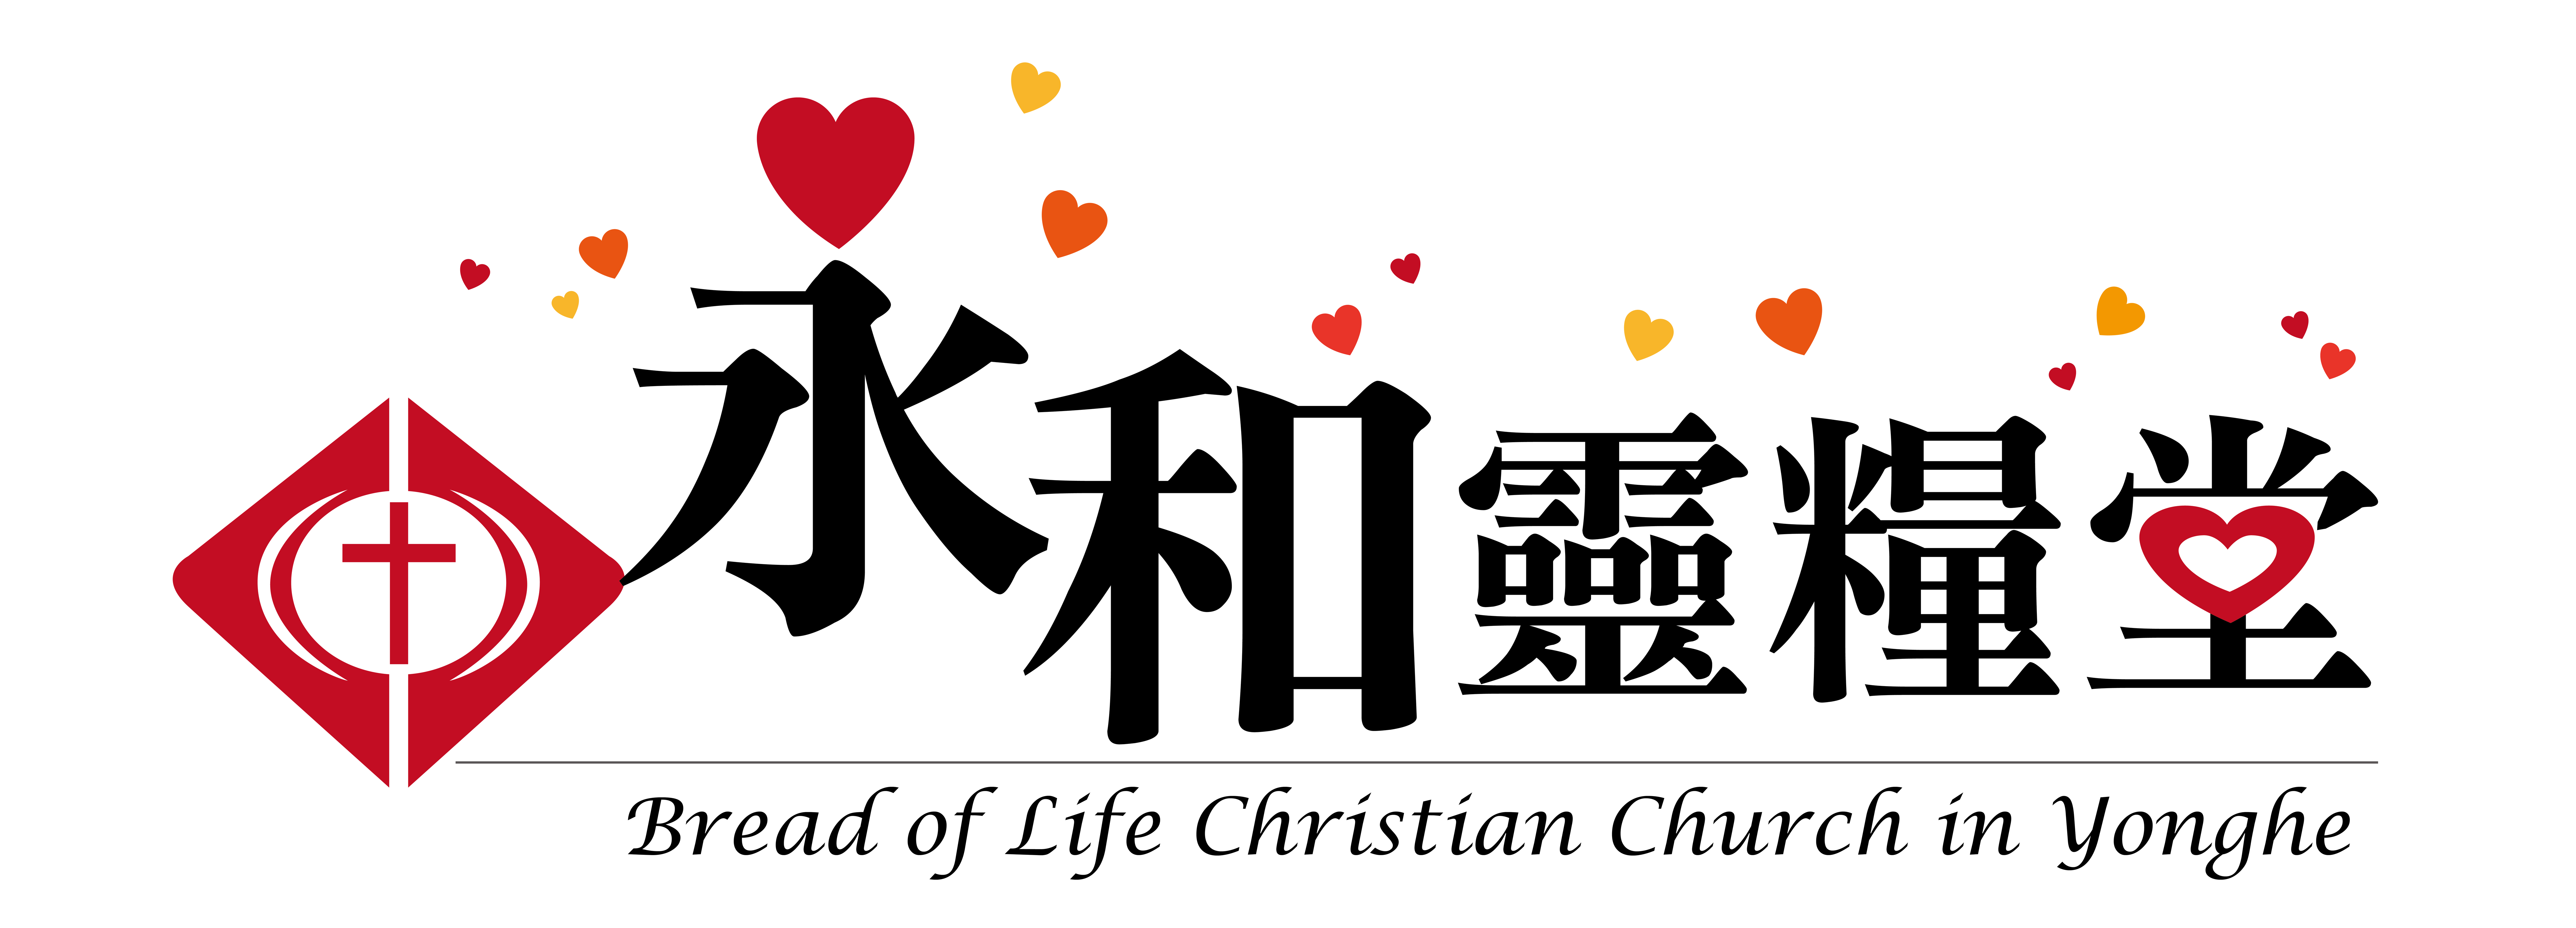 社團法人中華民國基督教永和靈糧福音協會-募款活動